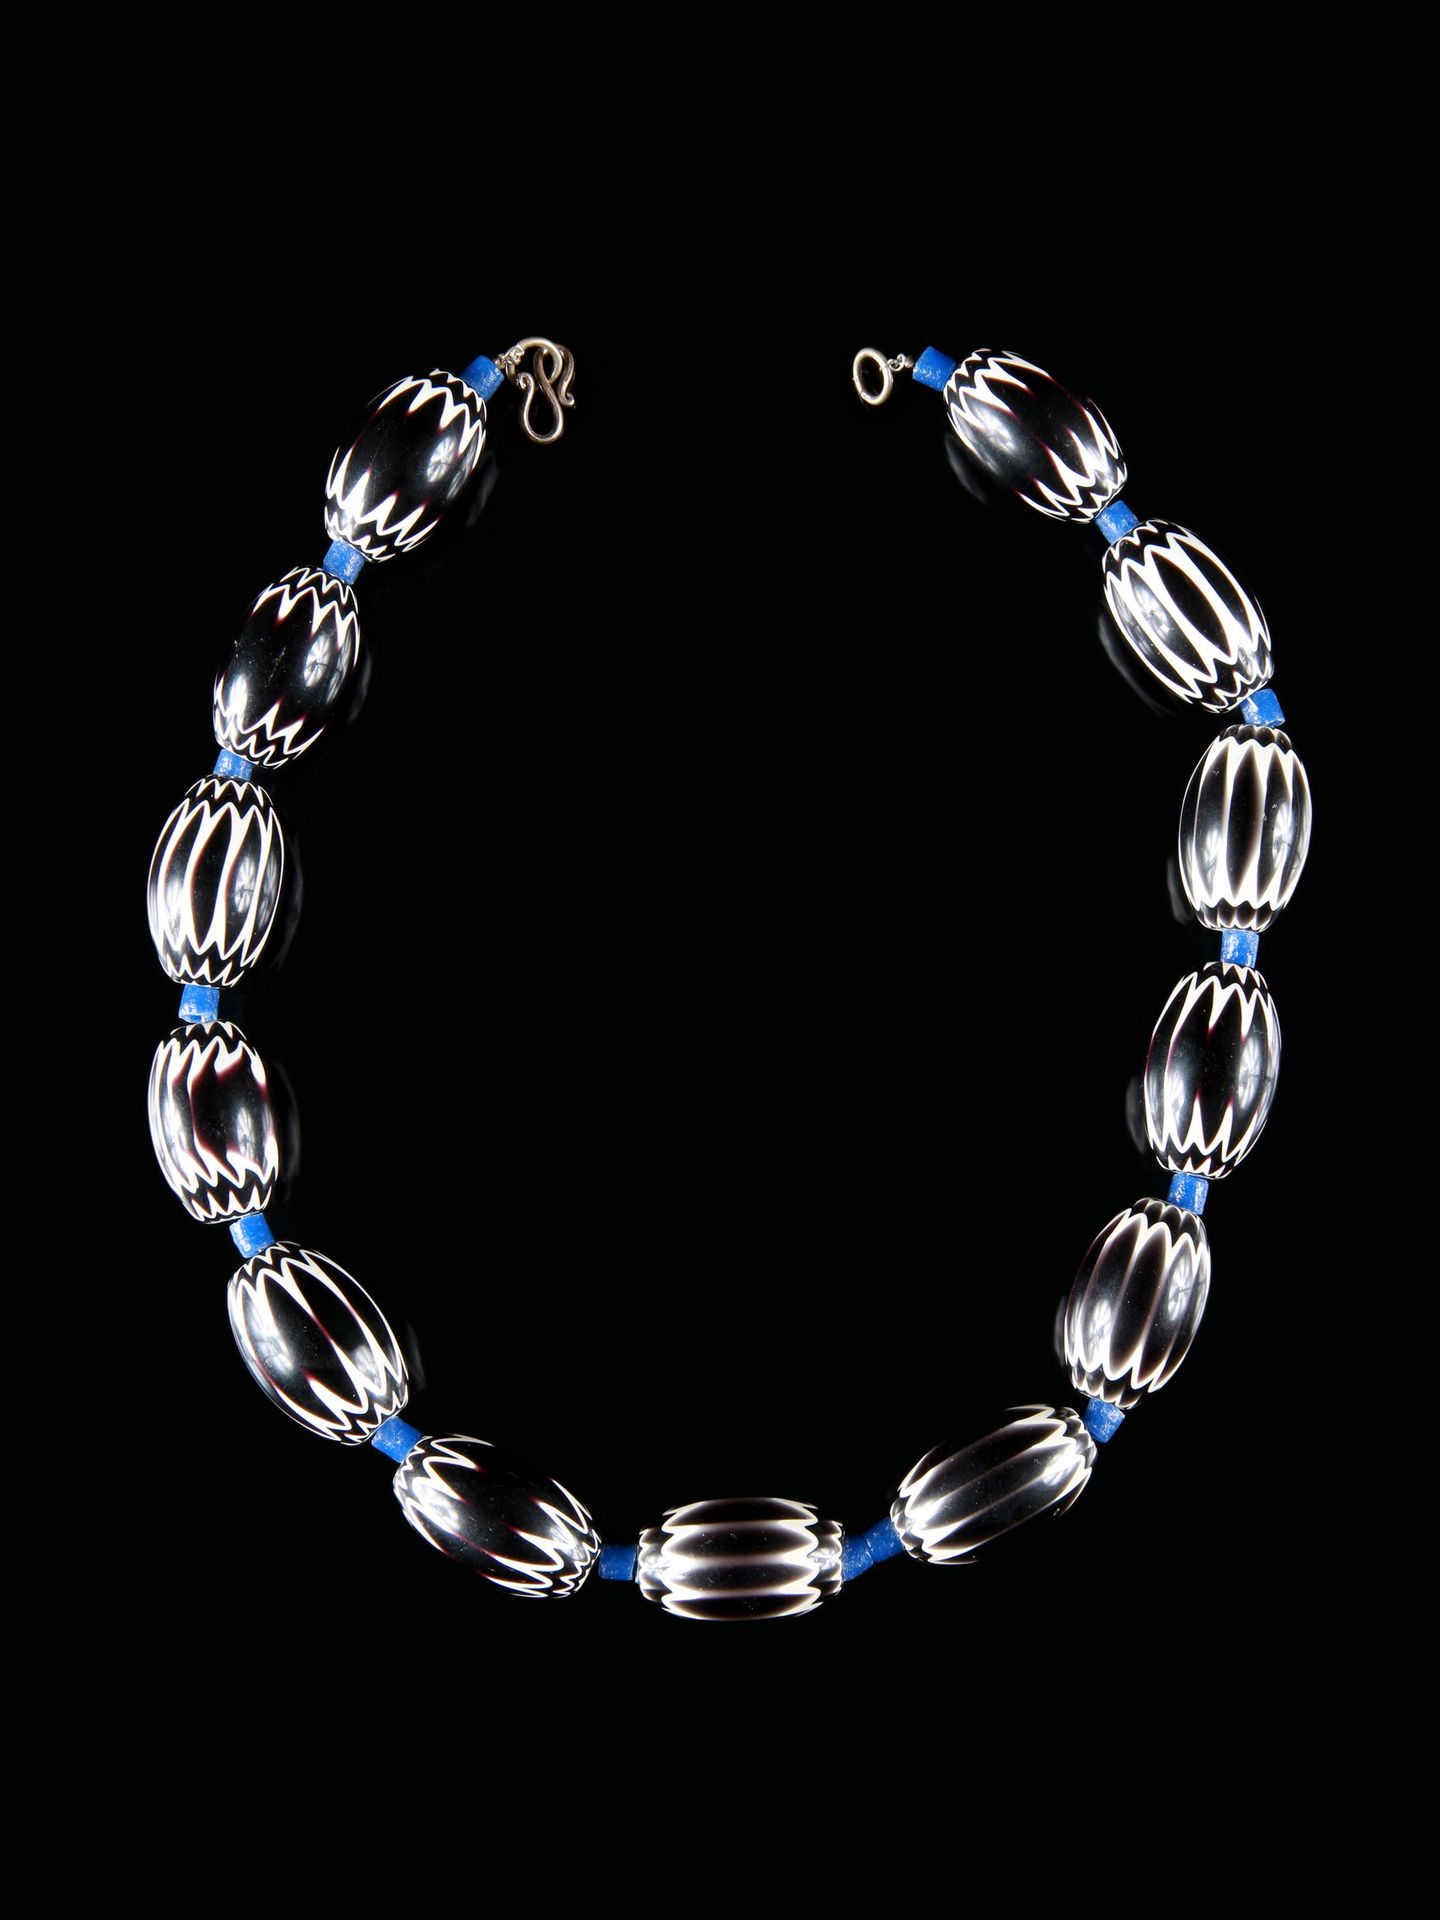 A Chevron Beads Necklace Collier, perles en chevron

Afrique de l'Ouest

Sans so&hellip;